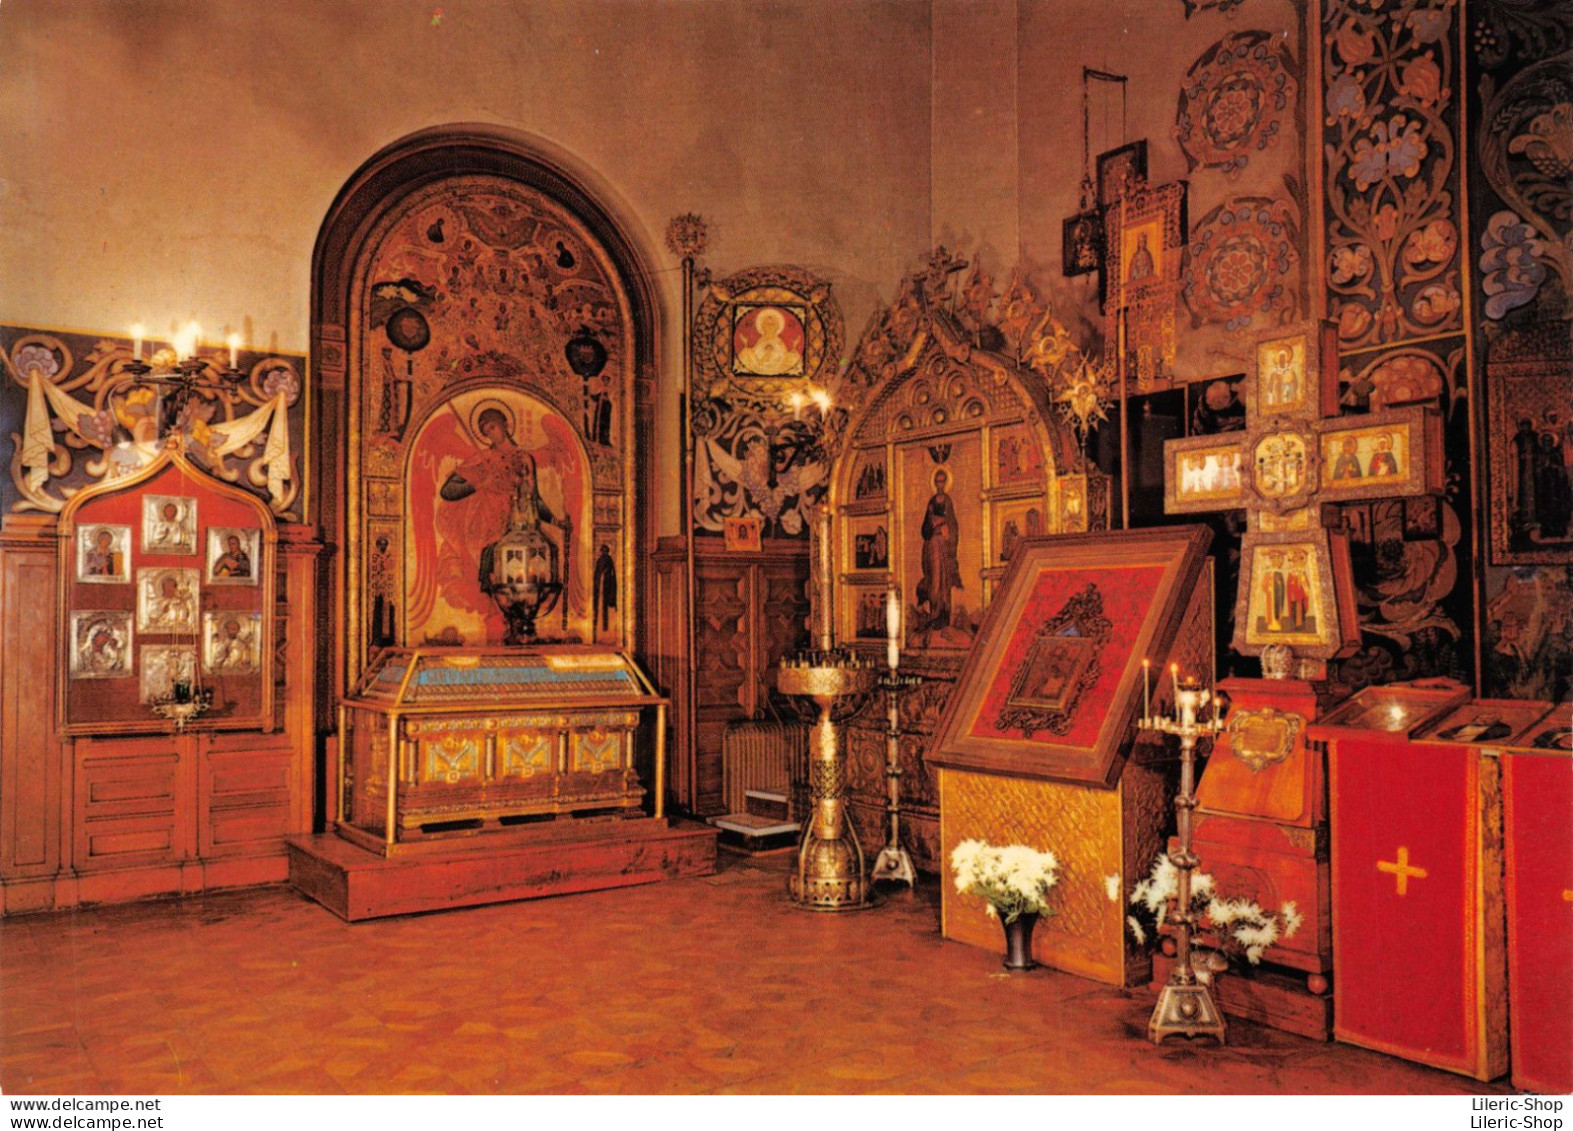 Nice (06) - Cathédrale Orthodoxe Russe - Le Saint-Sépulcre cpm GF